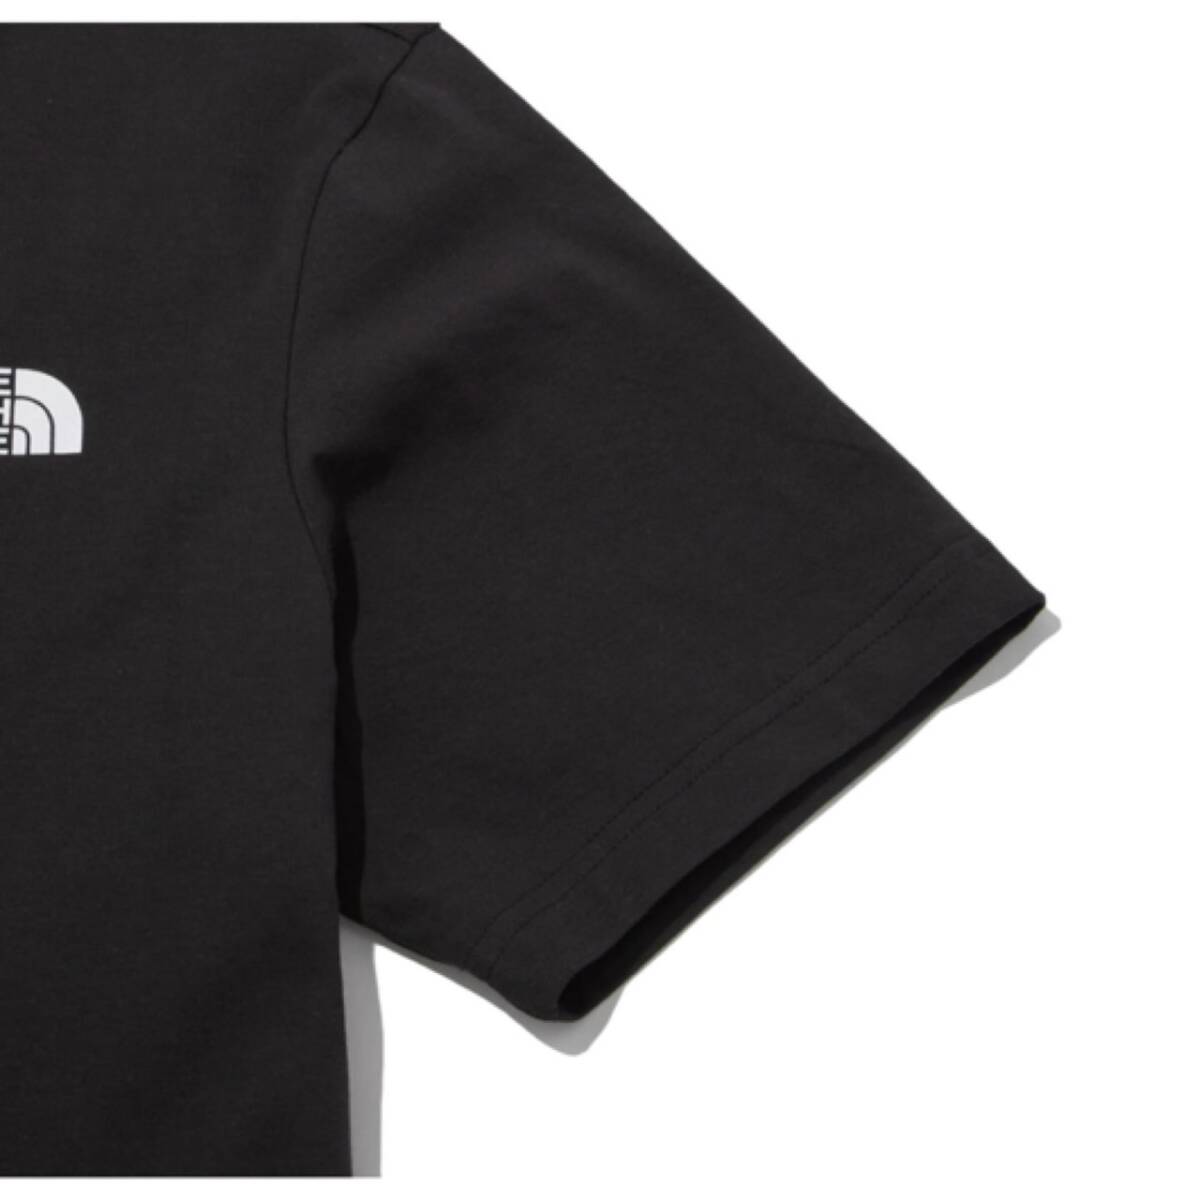 ザ ノースフェイス 半袖 Tシャツ NT7U ブラック Lサイズ コットン素材 クルーネック シンプルロゴ THE NORTH FACE COTTON S/S TEE 新品